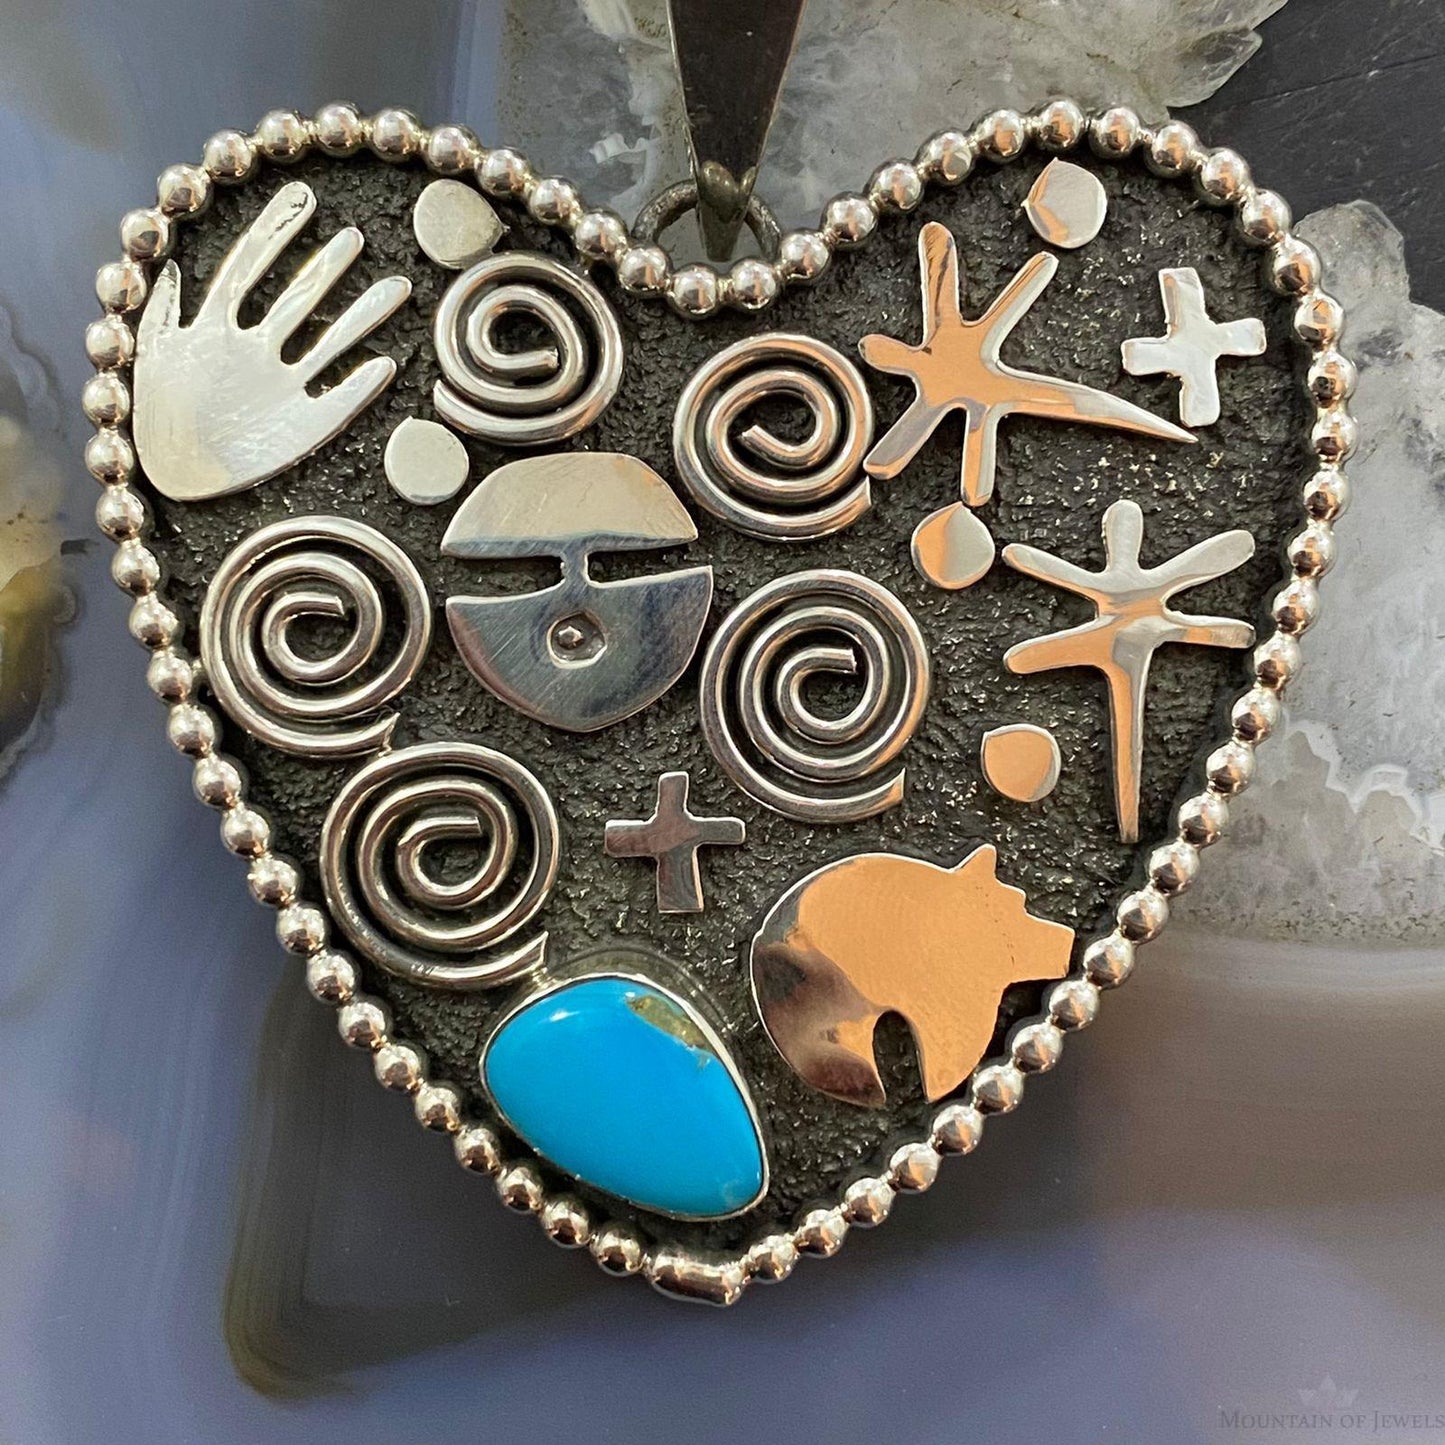 Alex Sanchez Sterling Silver Turquoise Petroglyph Heart Pendant For Women #1